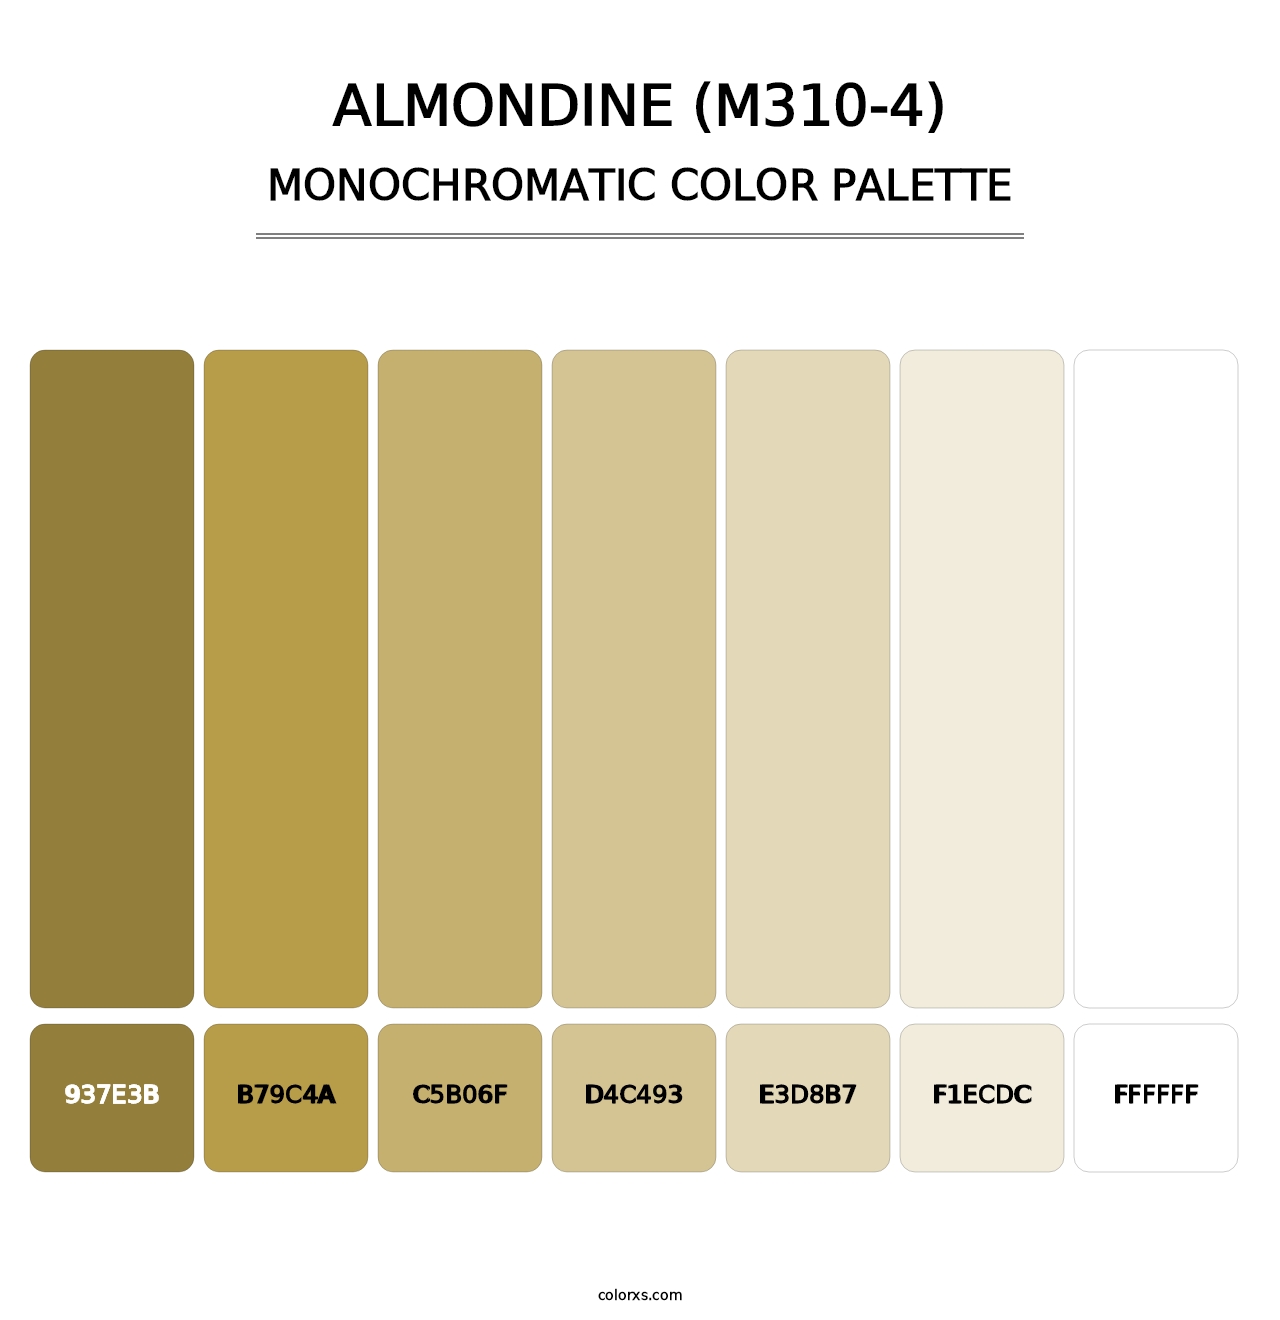 Almondine (M310-4) - Monochromatic Color Palette